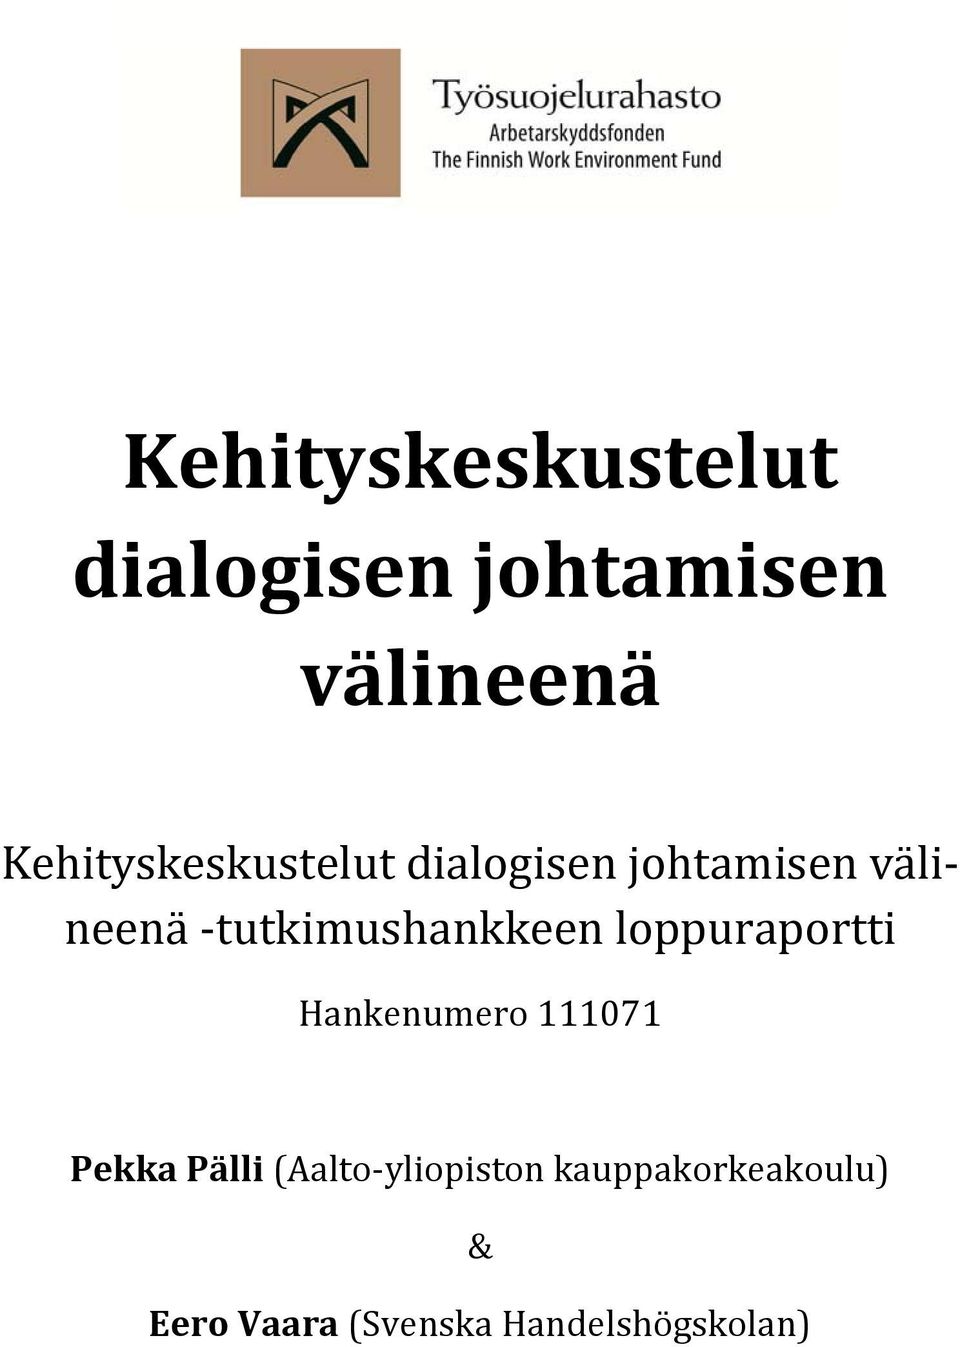 Pälli (Aalto yliopiston kauppakorkeakoulu) & Eero Vaara